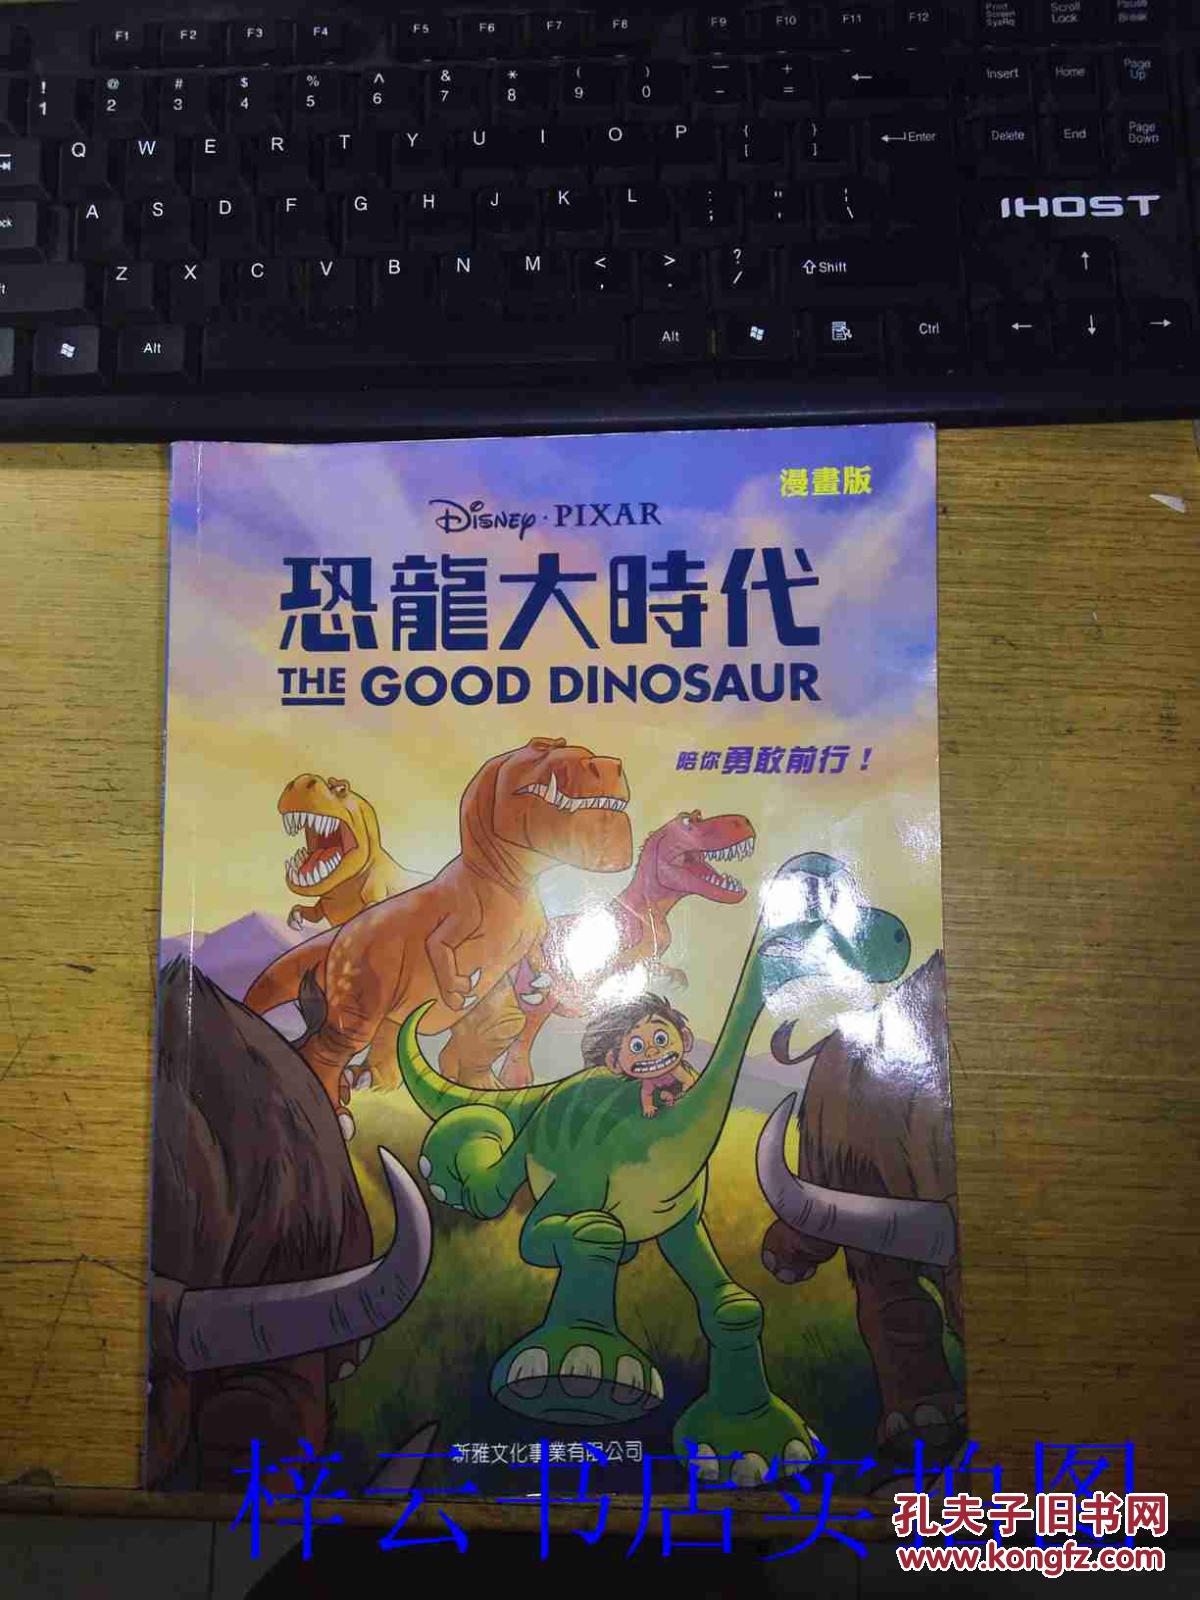 漫画版:Disney Pixar恐龙 大时代The Good Dinosaur